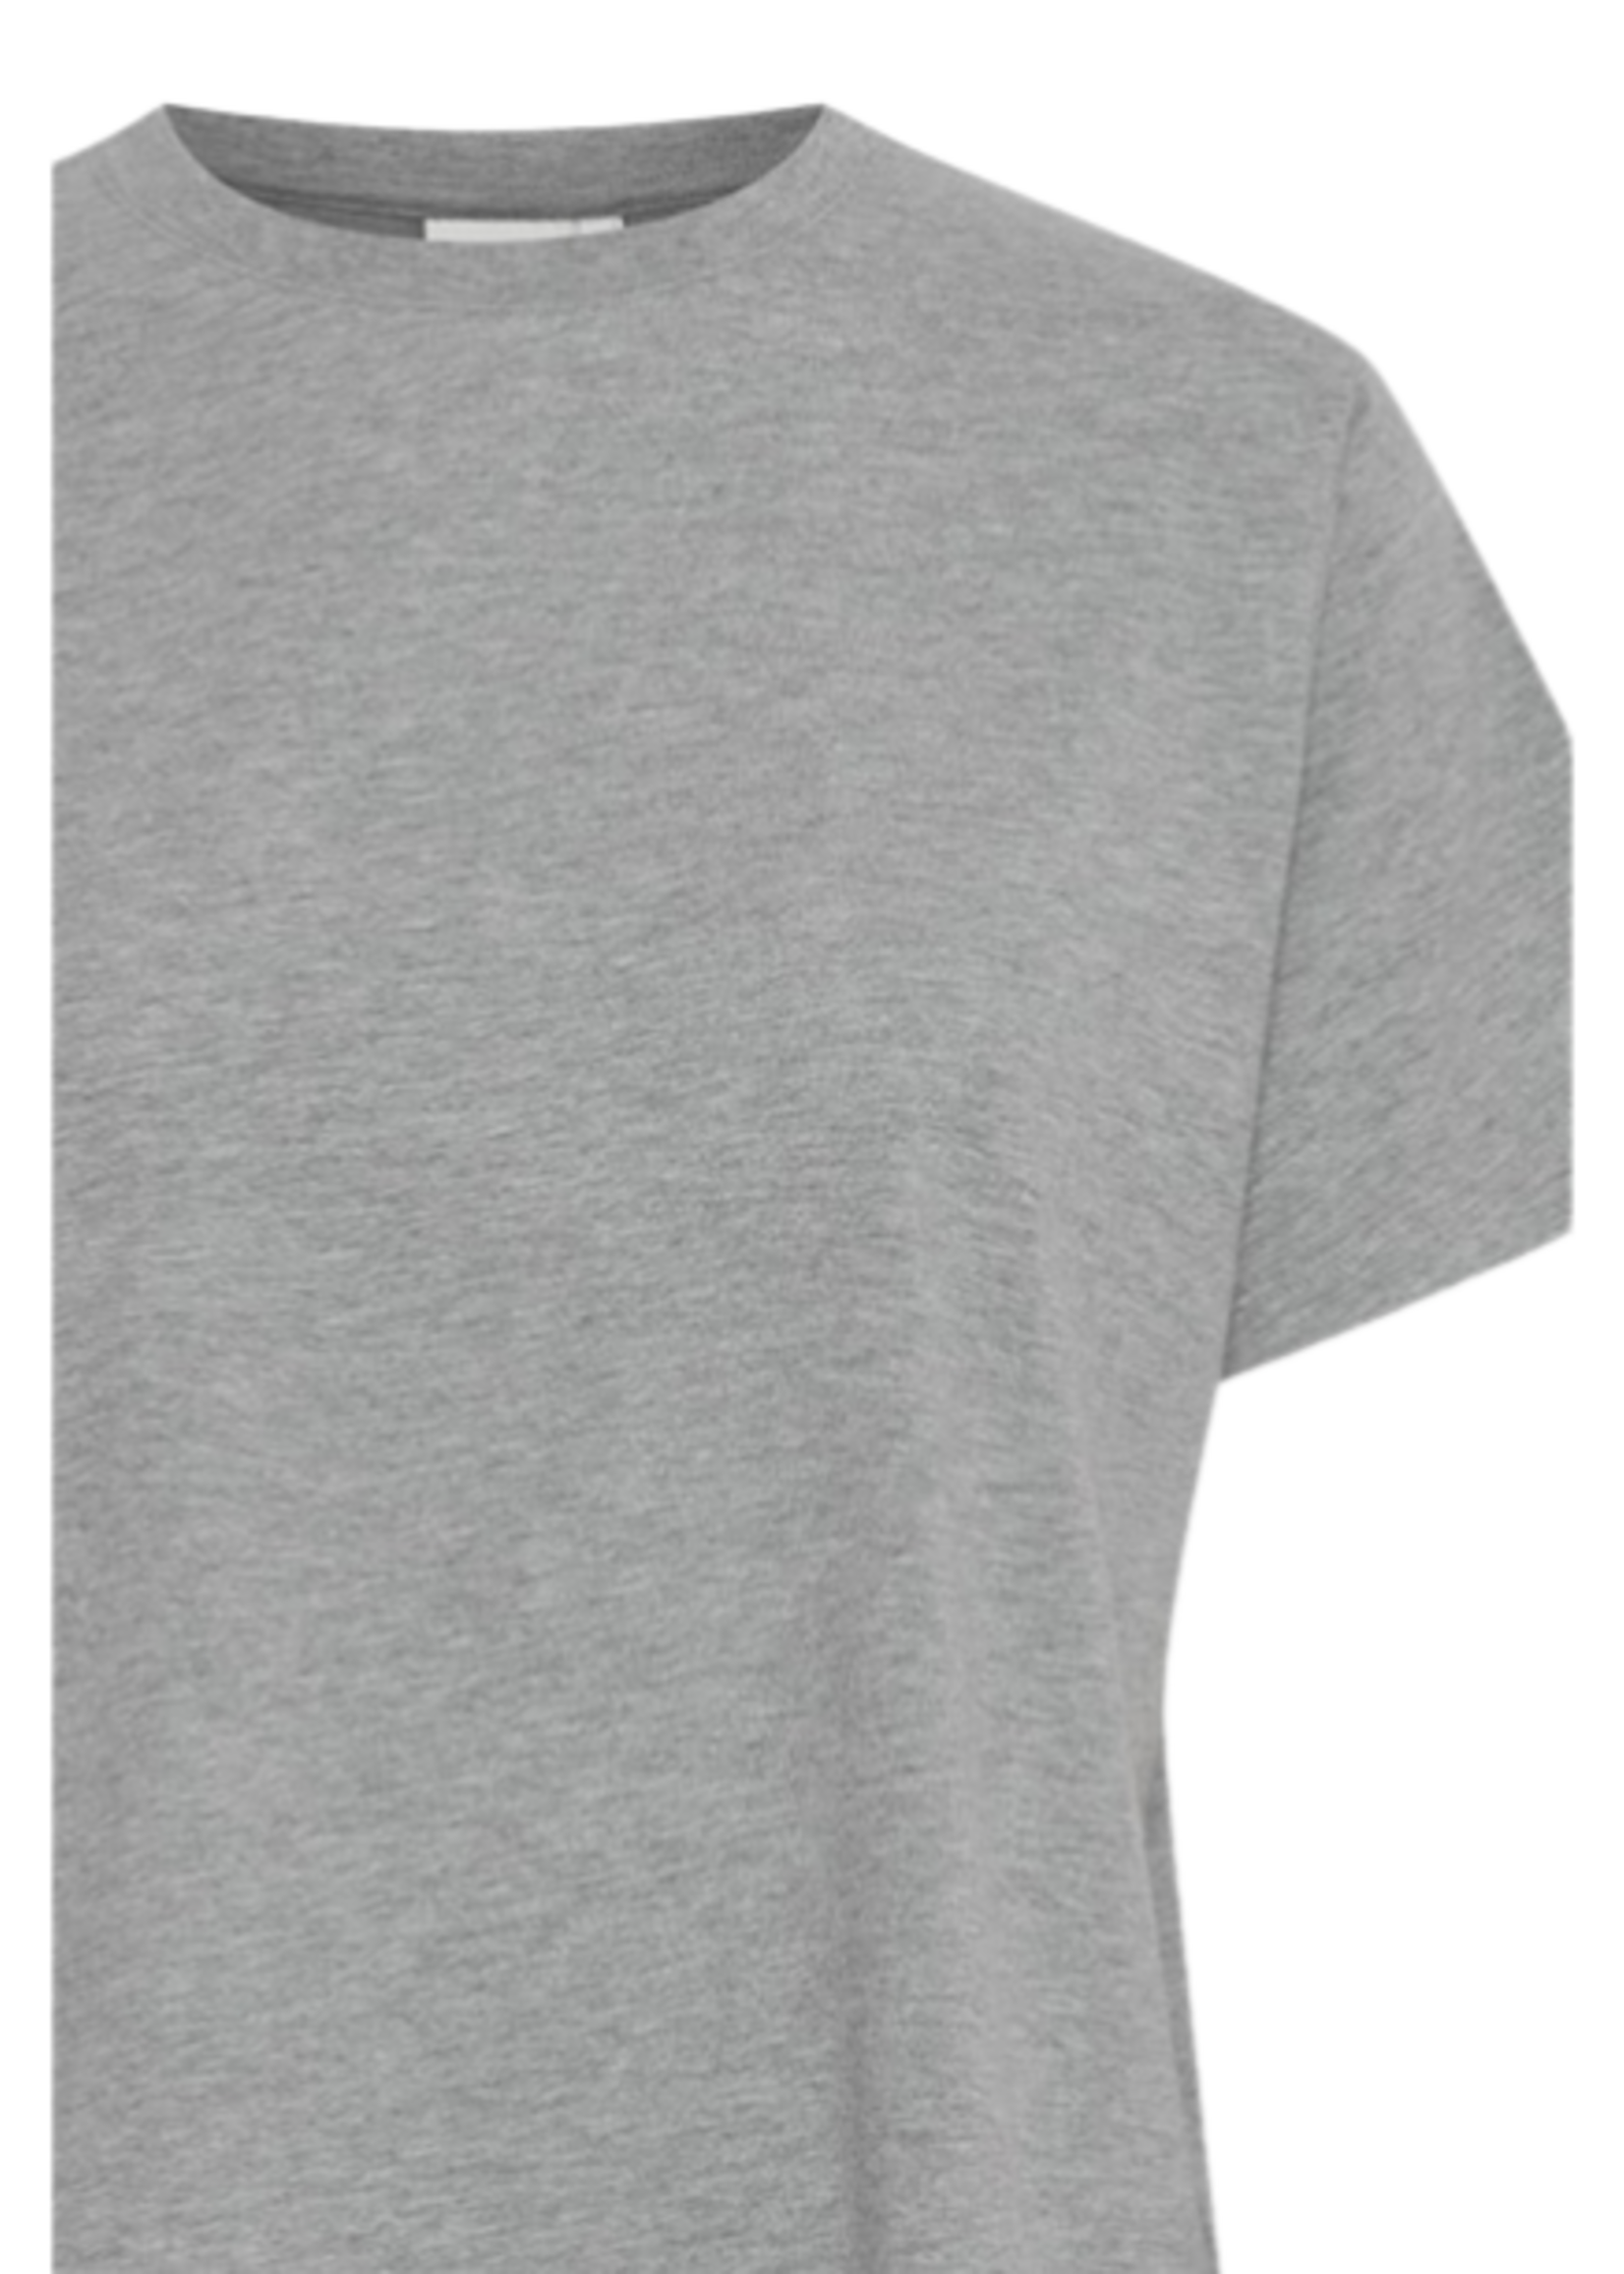 ICHI Ihpalmer basic tshirt grey